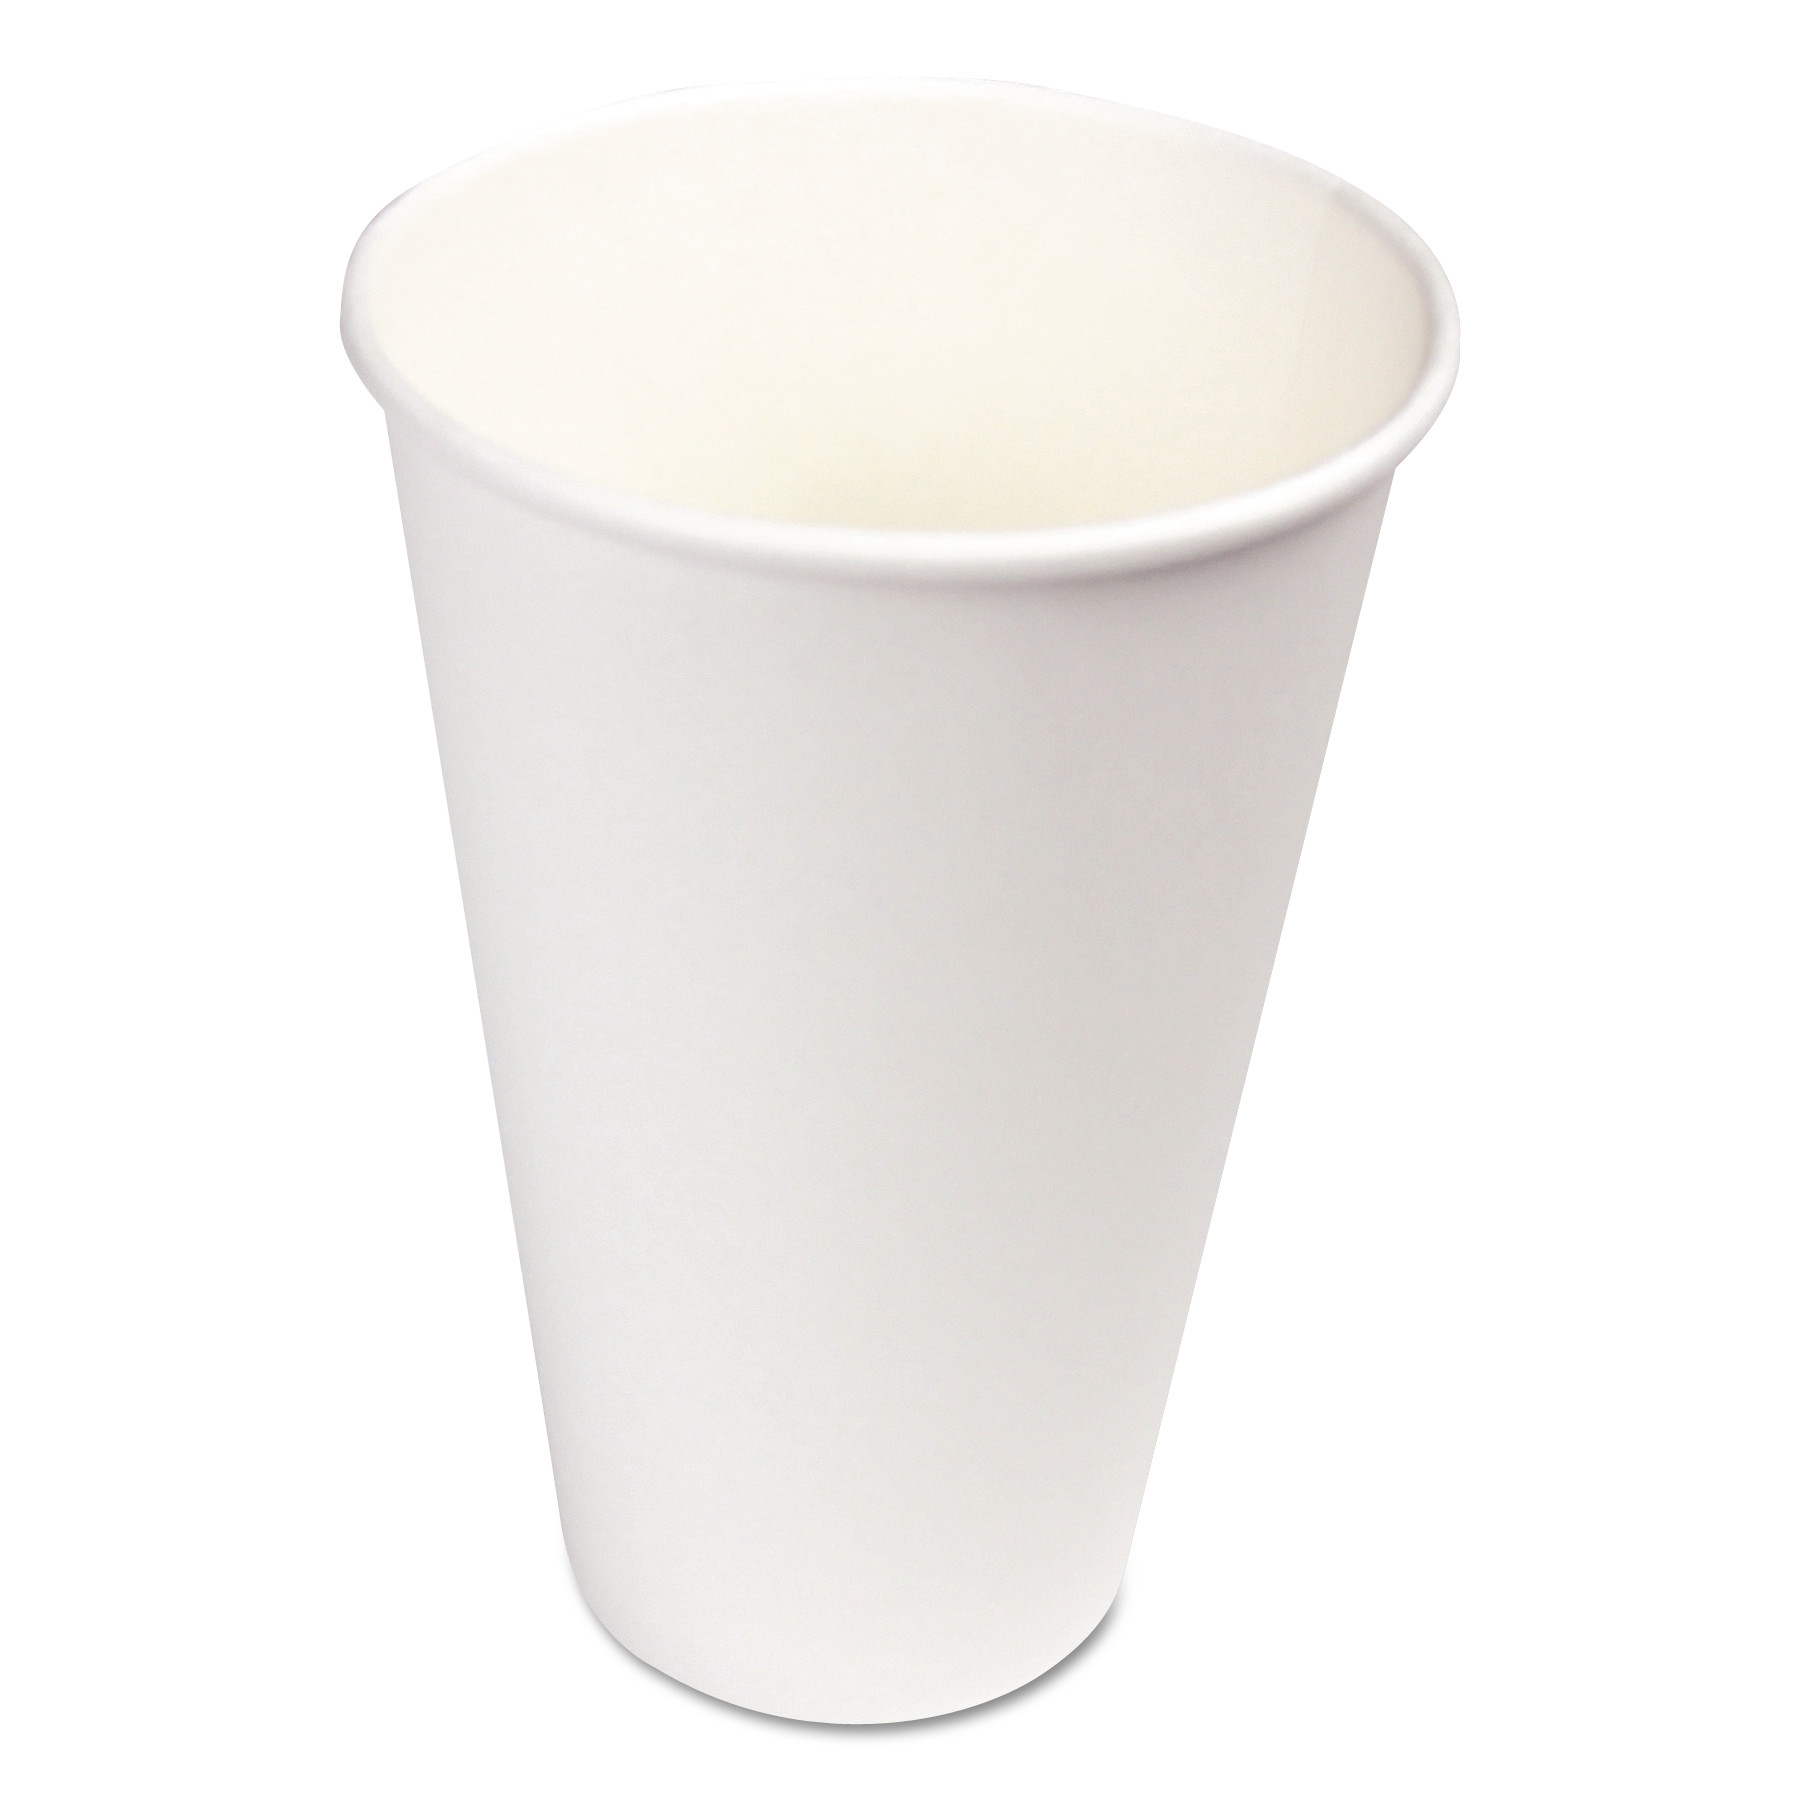 16 oz white paper cups